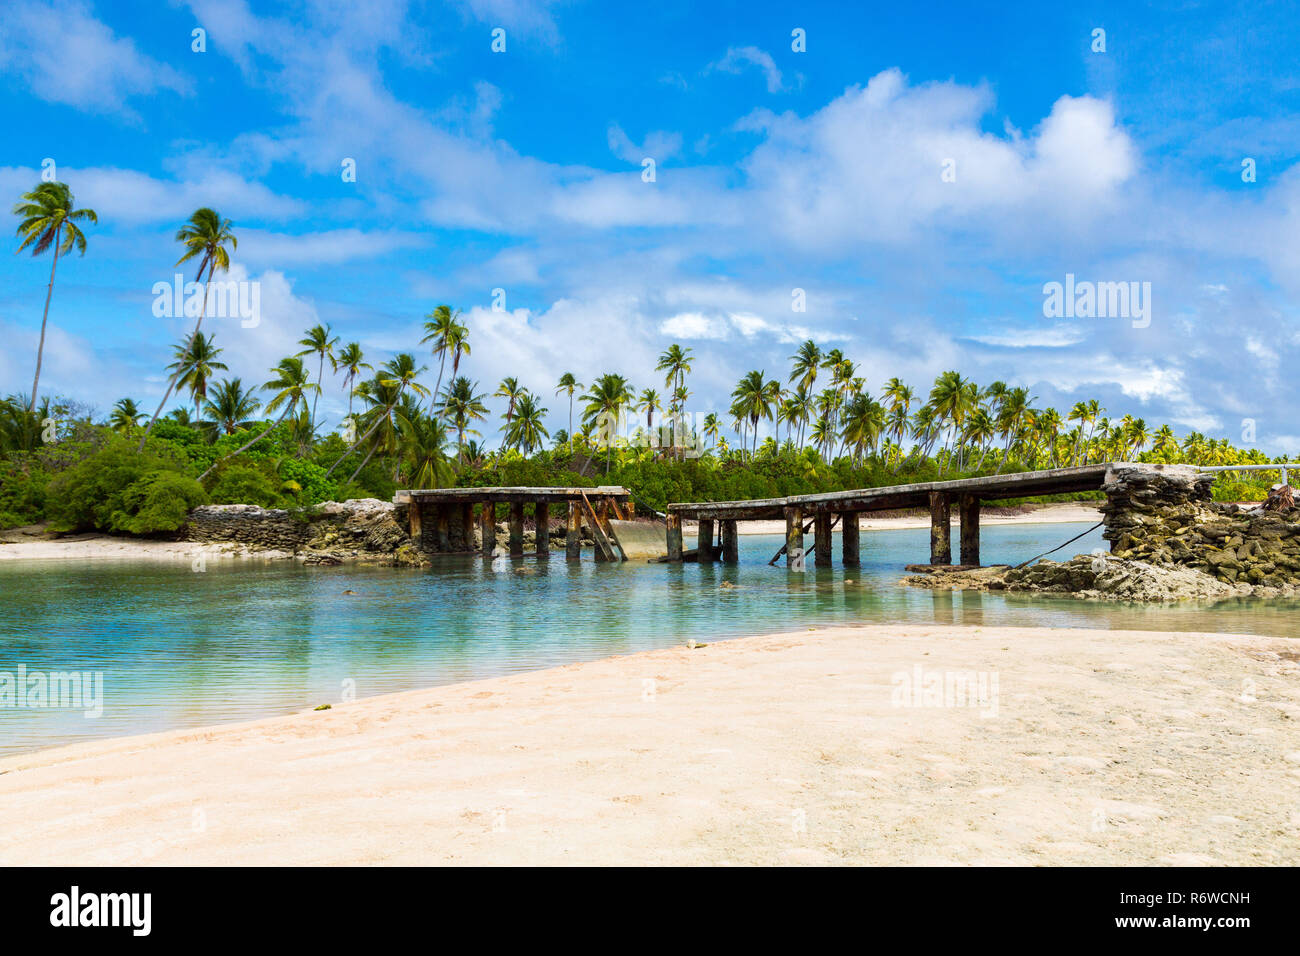 Ponte Rotto sotto le palme tra gli isolotti su laguna nord atollo di Tarawa, Kiribati Micronesia, isole Gilbert, Oceania Oceano Pacifico del Sud. Foto Stock